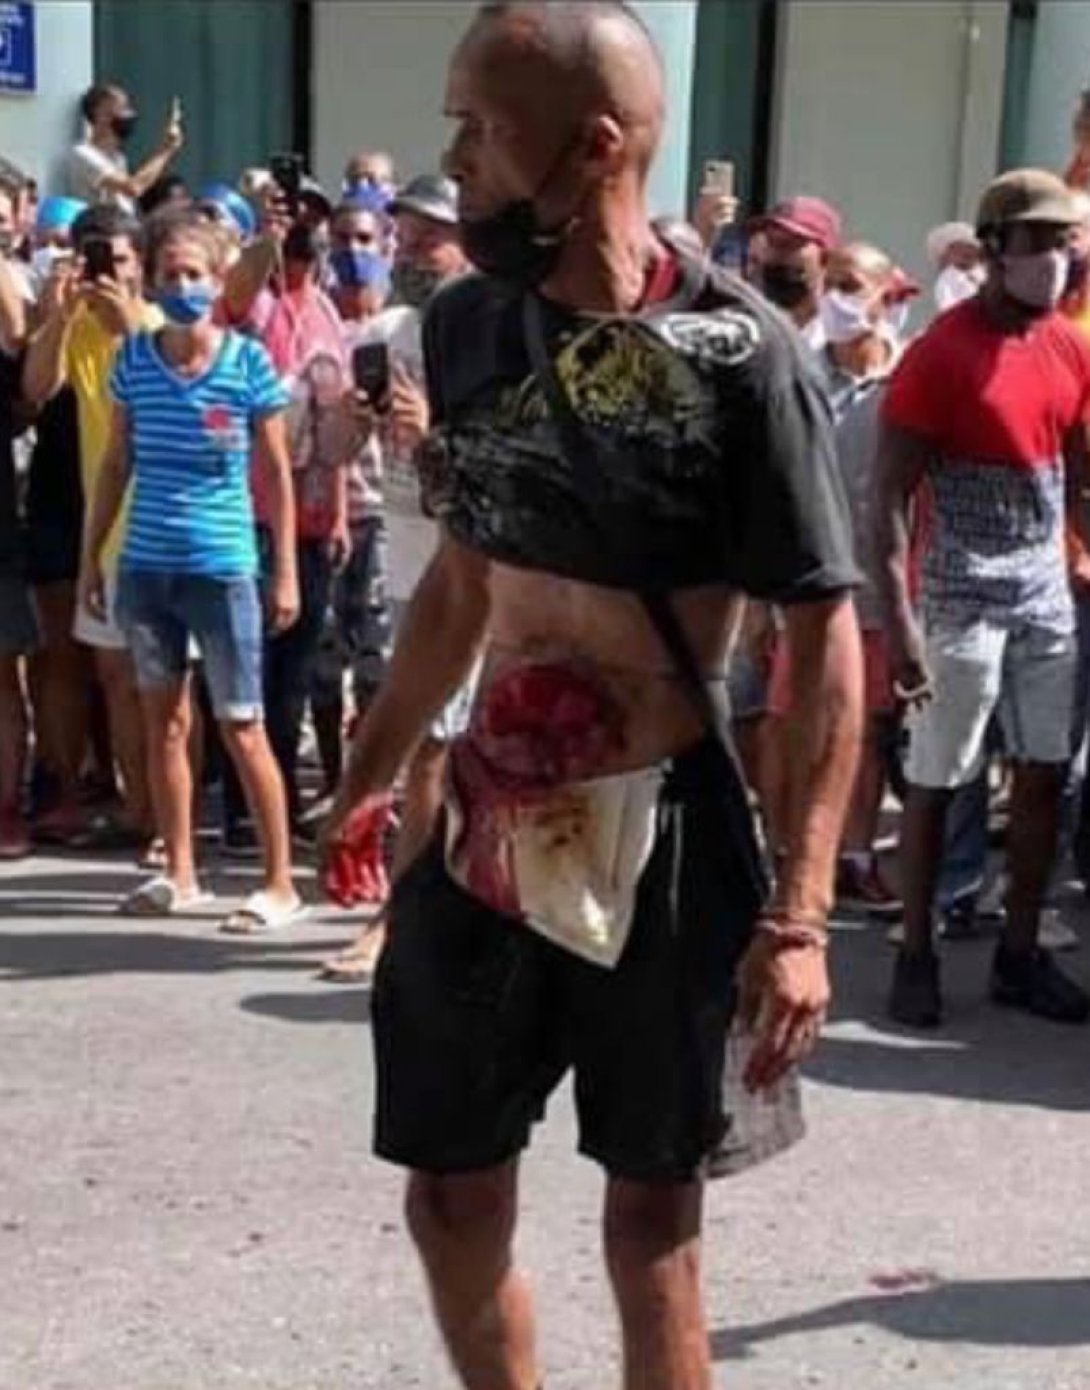 Un manifestante herido. Protestas en Cuba